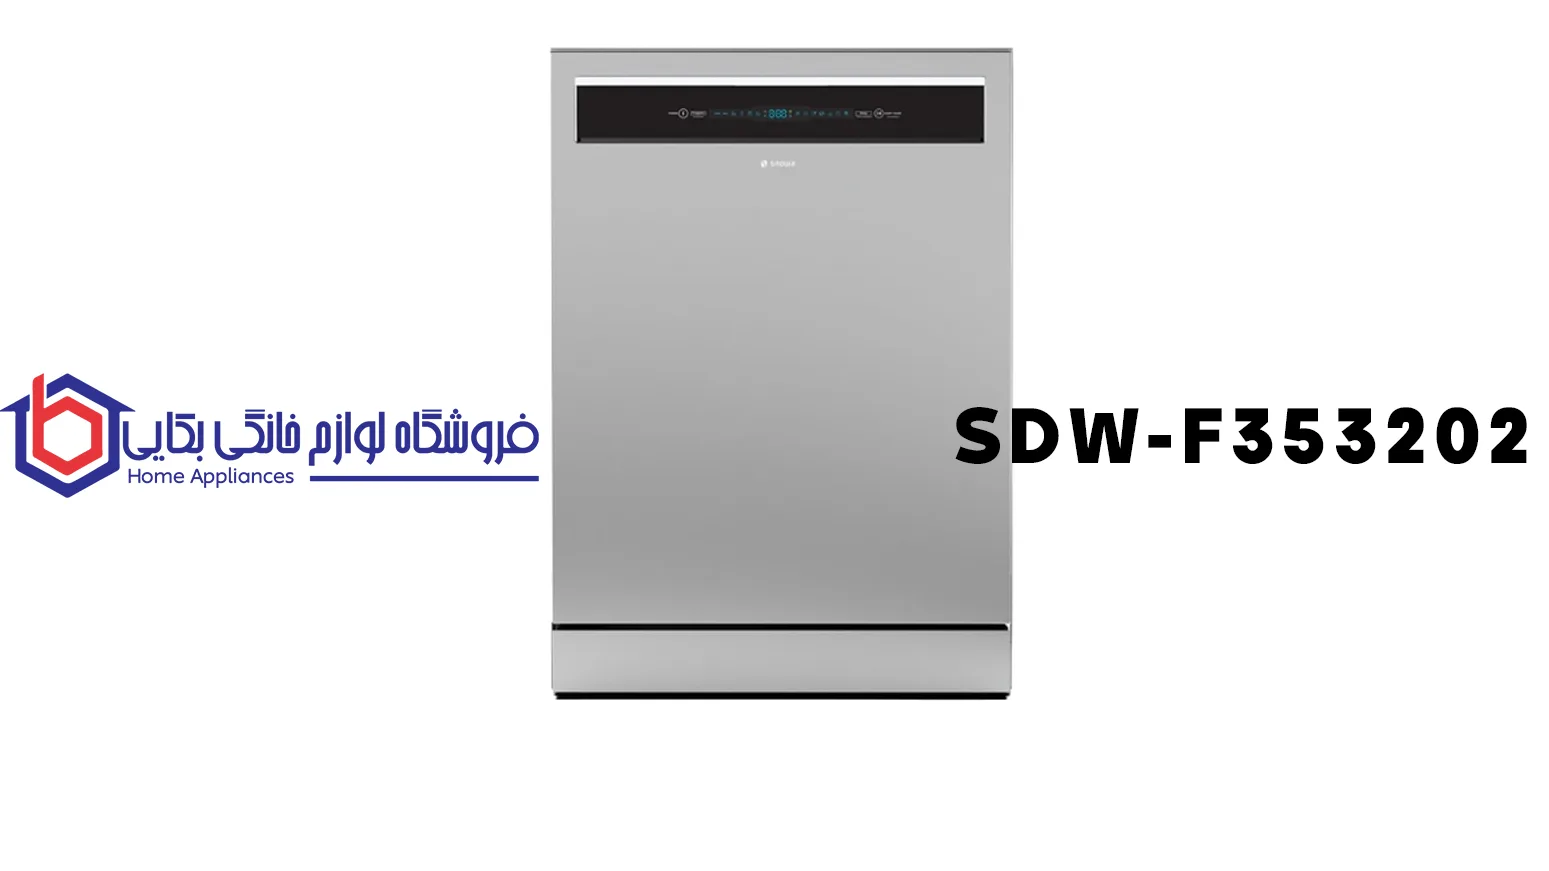 SDW-F353202